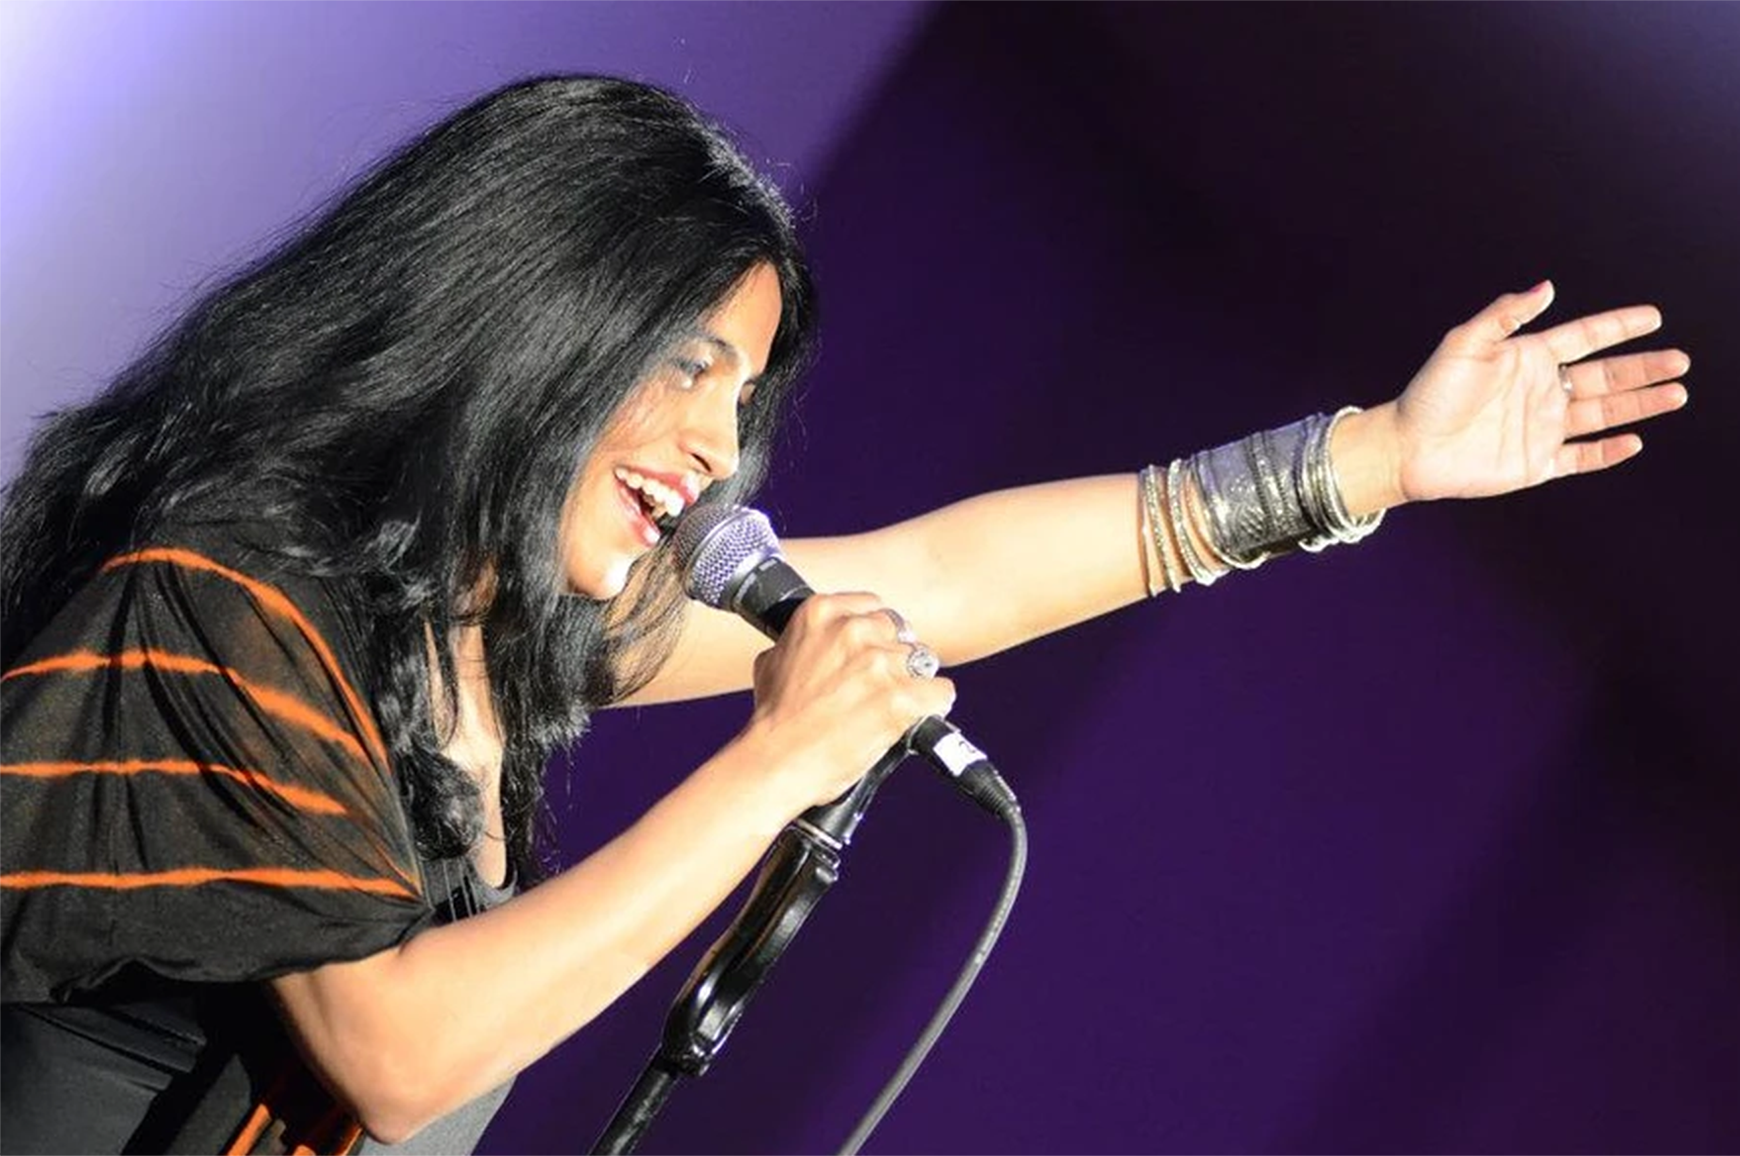 보라색 배경으로 노래하는 마이크를 들고 있는 가수 Falu의 이미지